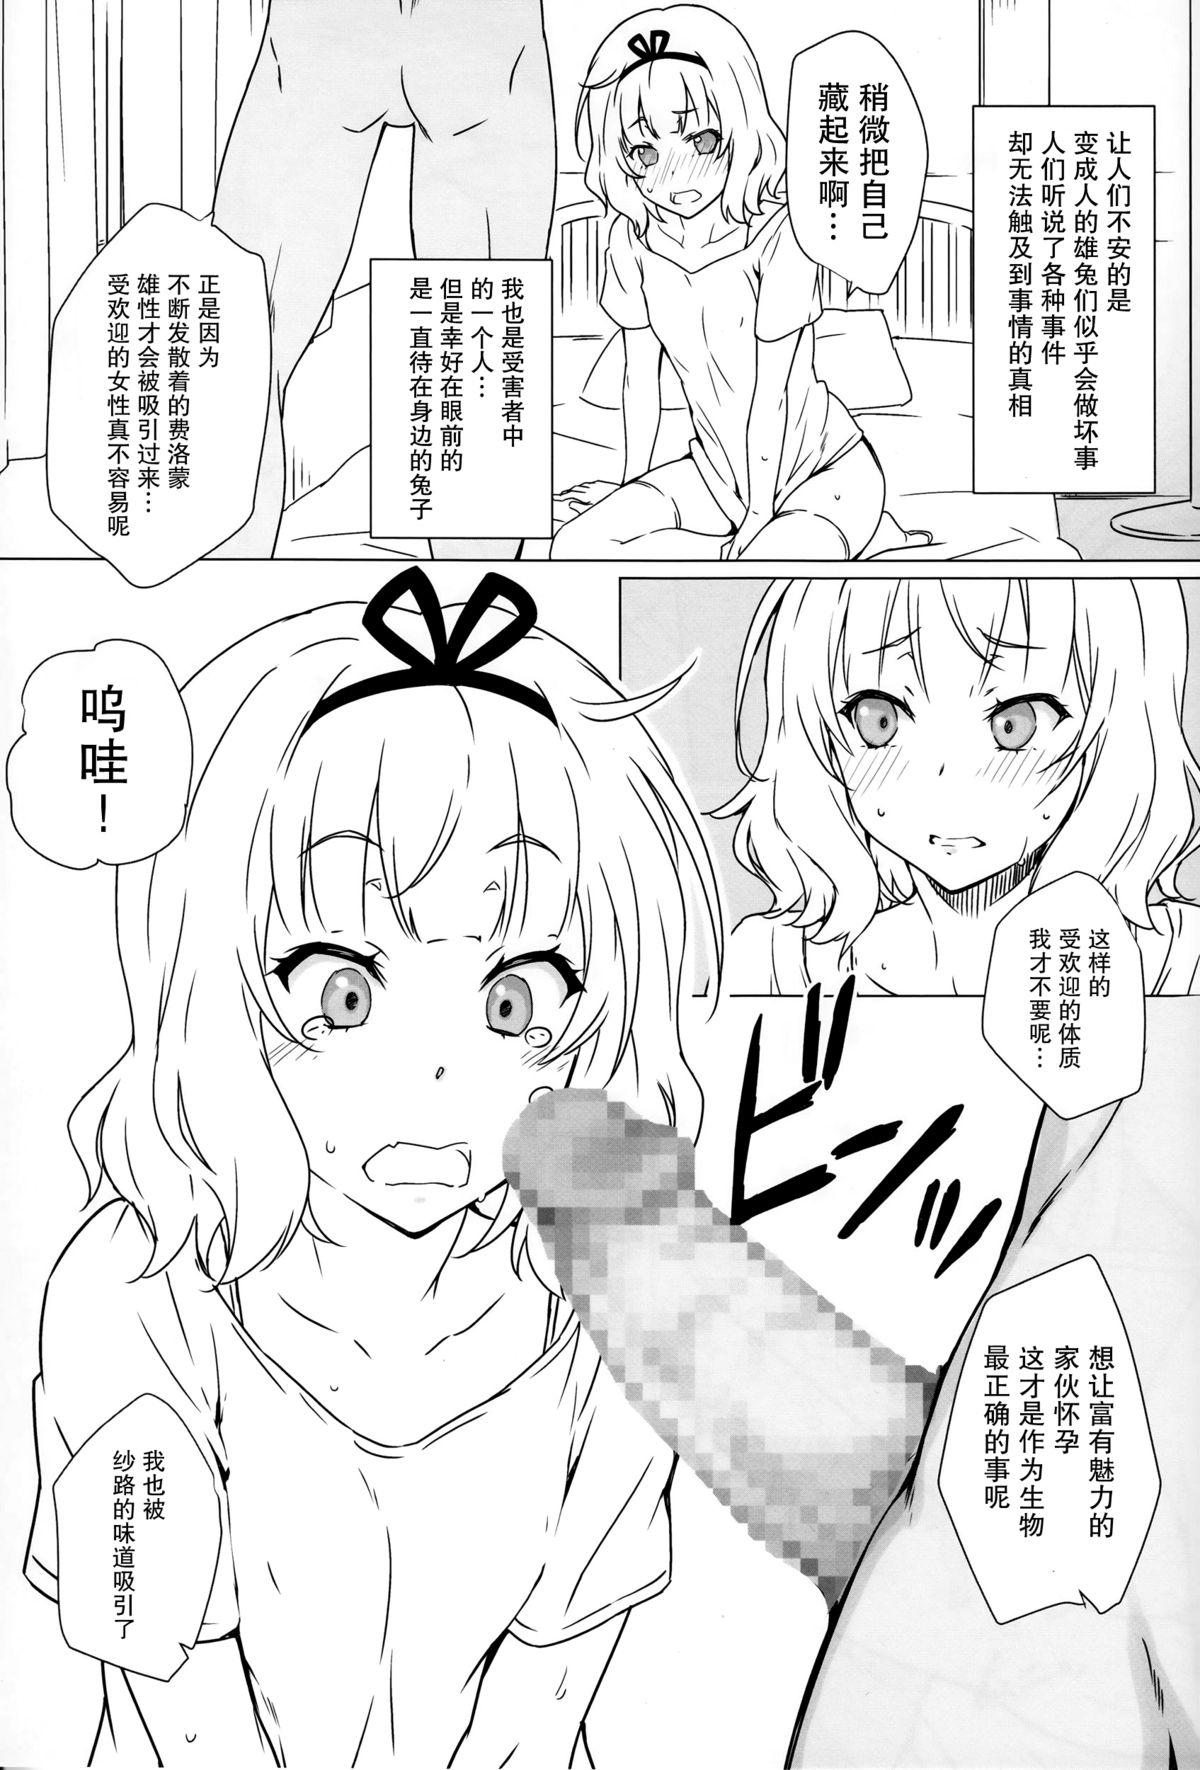 Gayemo Tsuki to Usagi to Kinpatsu Shoujo - Gochuumon wa usagi desu ka Brunettes - Page 10